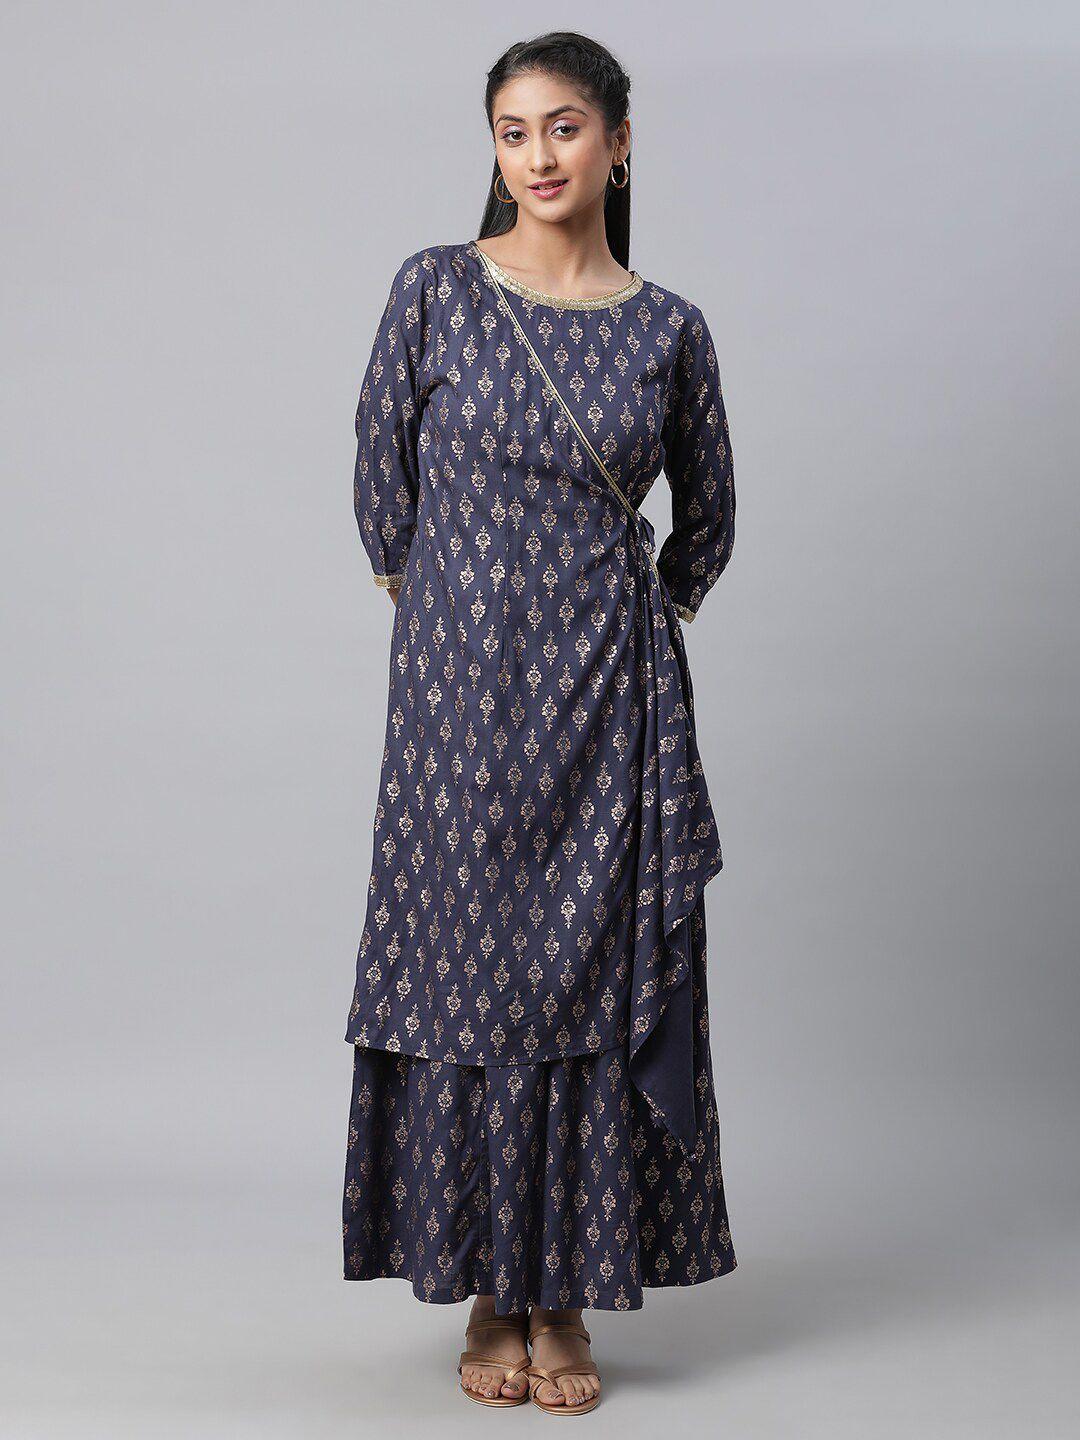 aurelia ethnic motifs printed sequined basic jumpsuit